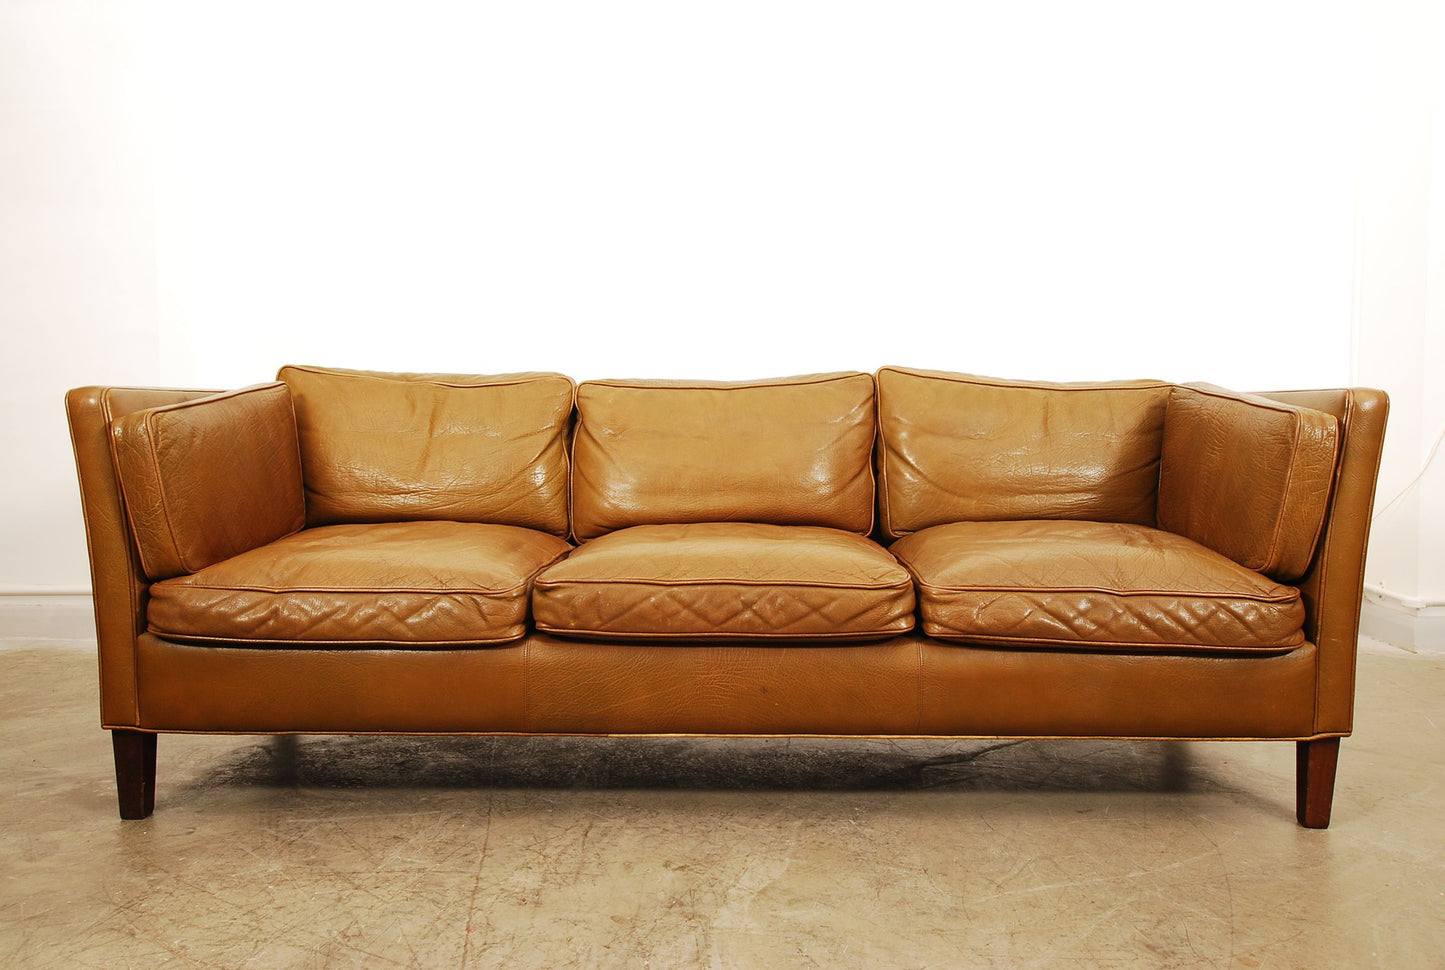 Three seat sofa in buffalo leather